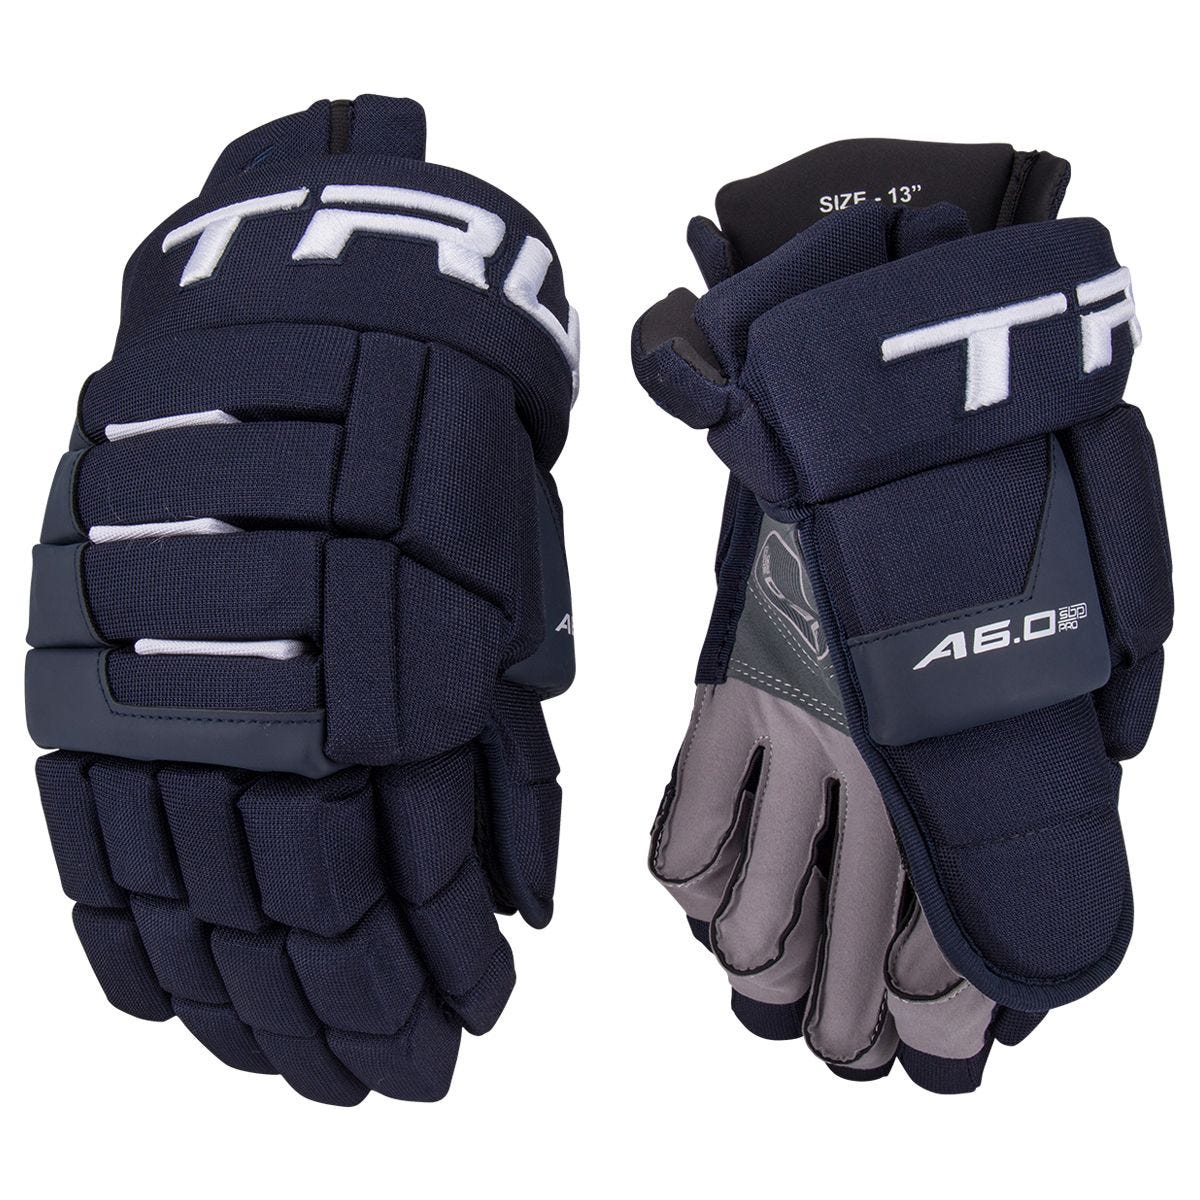 True A6.0 SBP 2019 Senior Hockey Glove